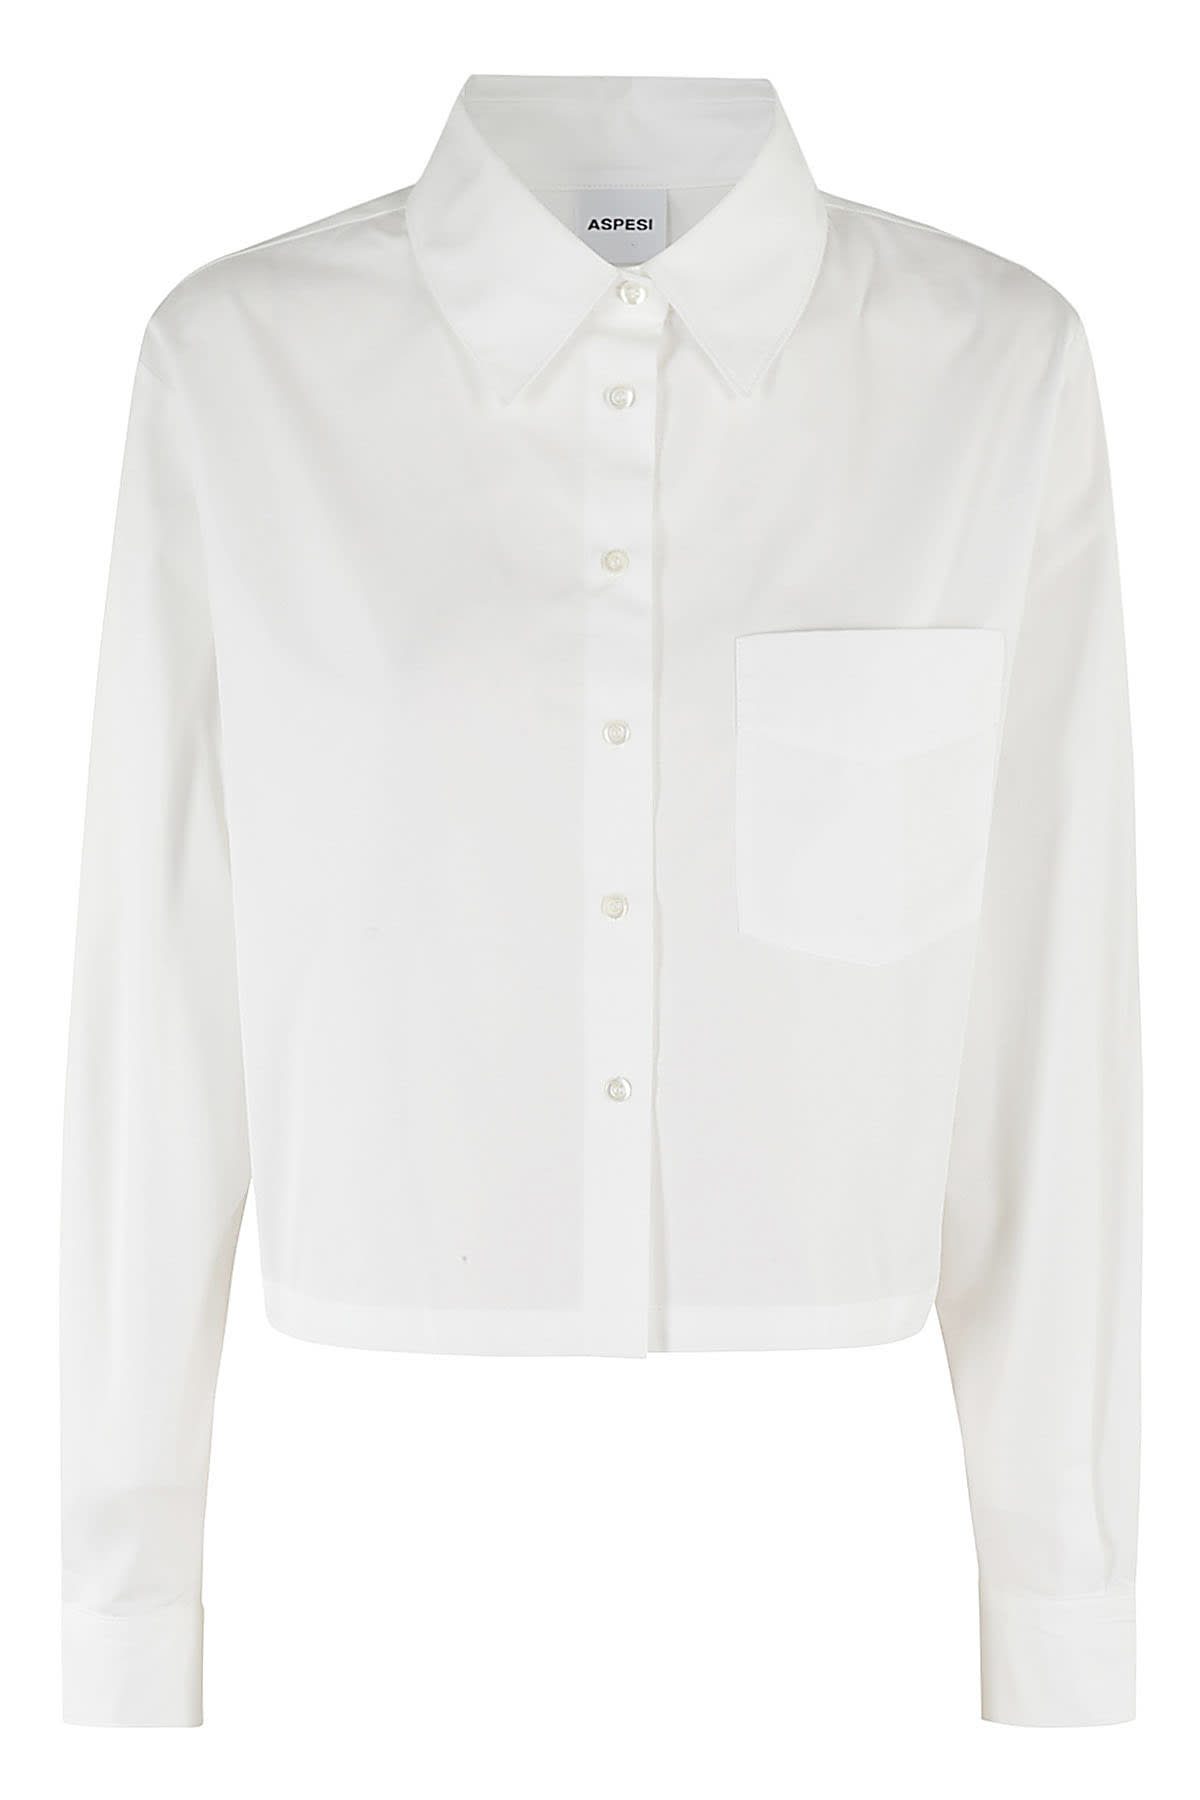 Shop Aspesi Camicia Mod 5465 In Bianco